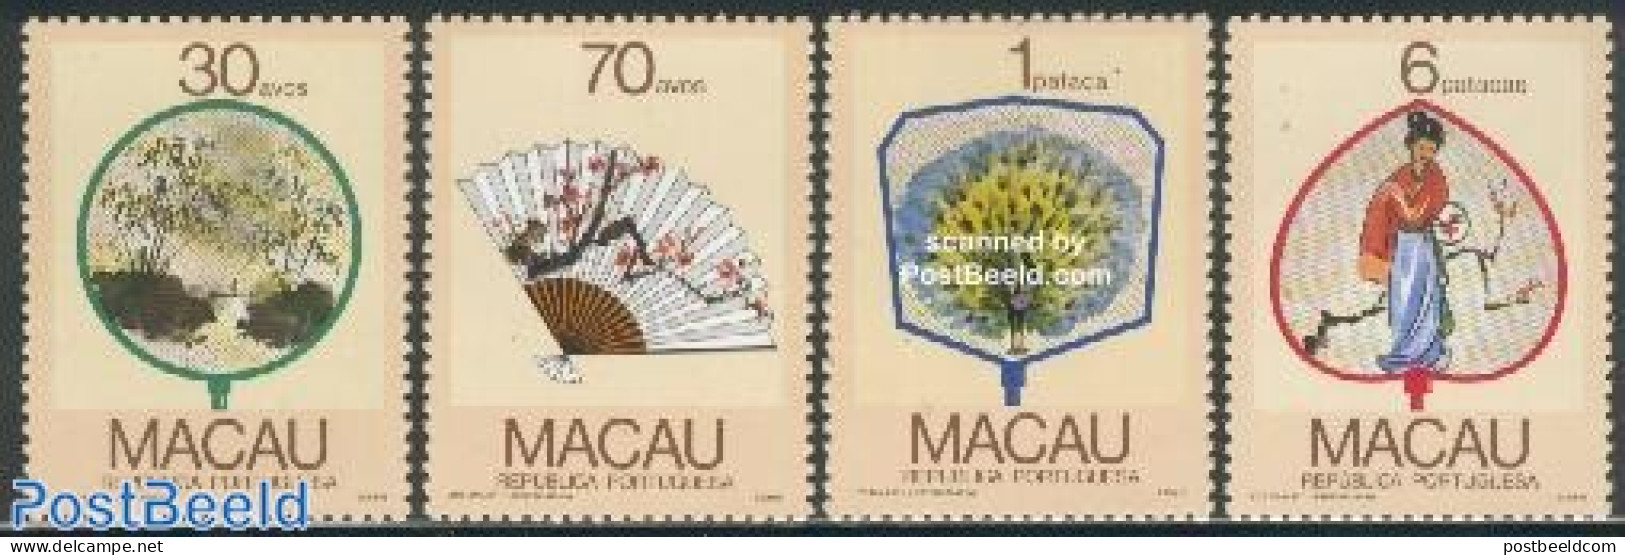 Macao 1987 Fans 4v, Mint NH, Nature - Birds - Art - Art & Antique Objects - Fans - Neufs